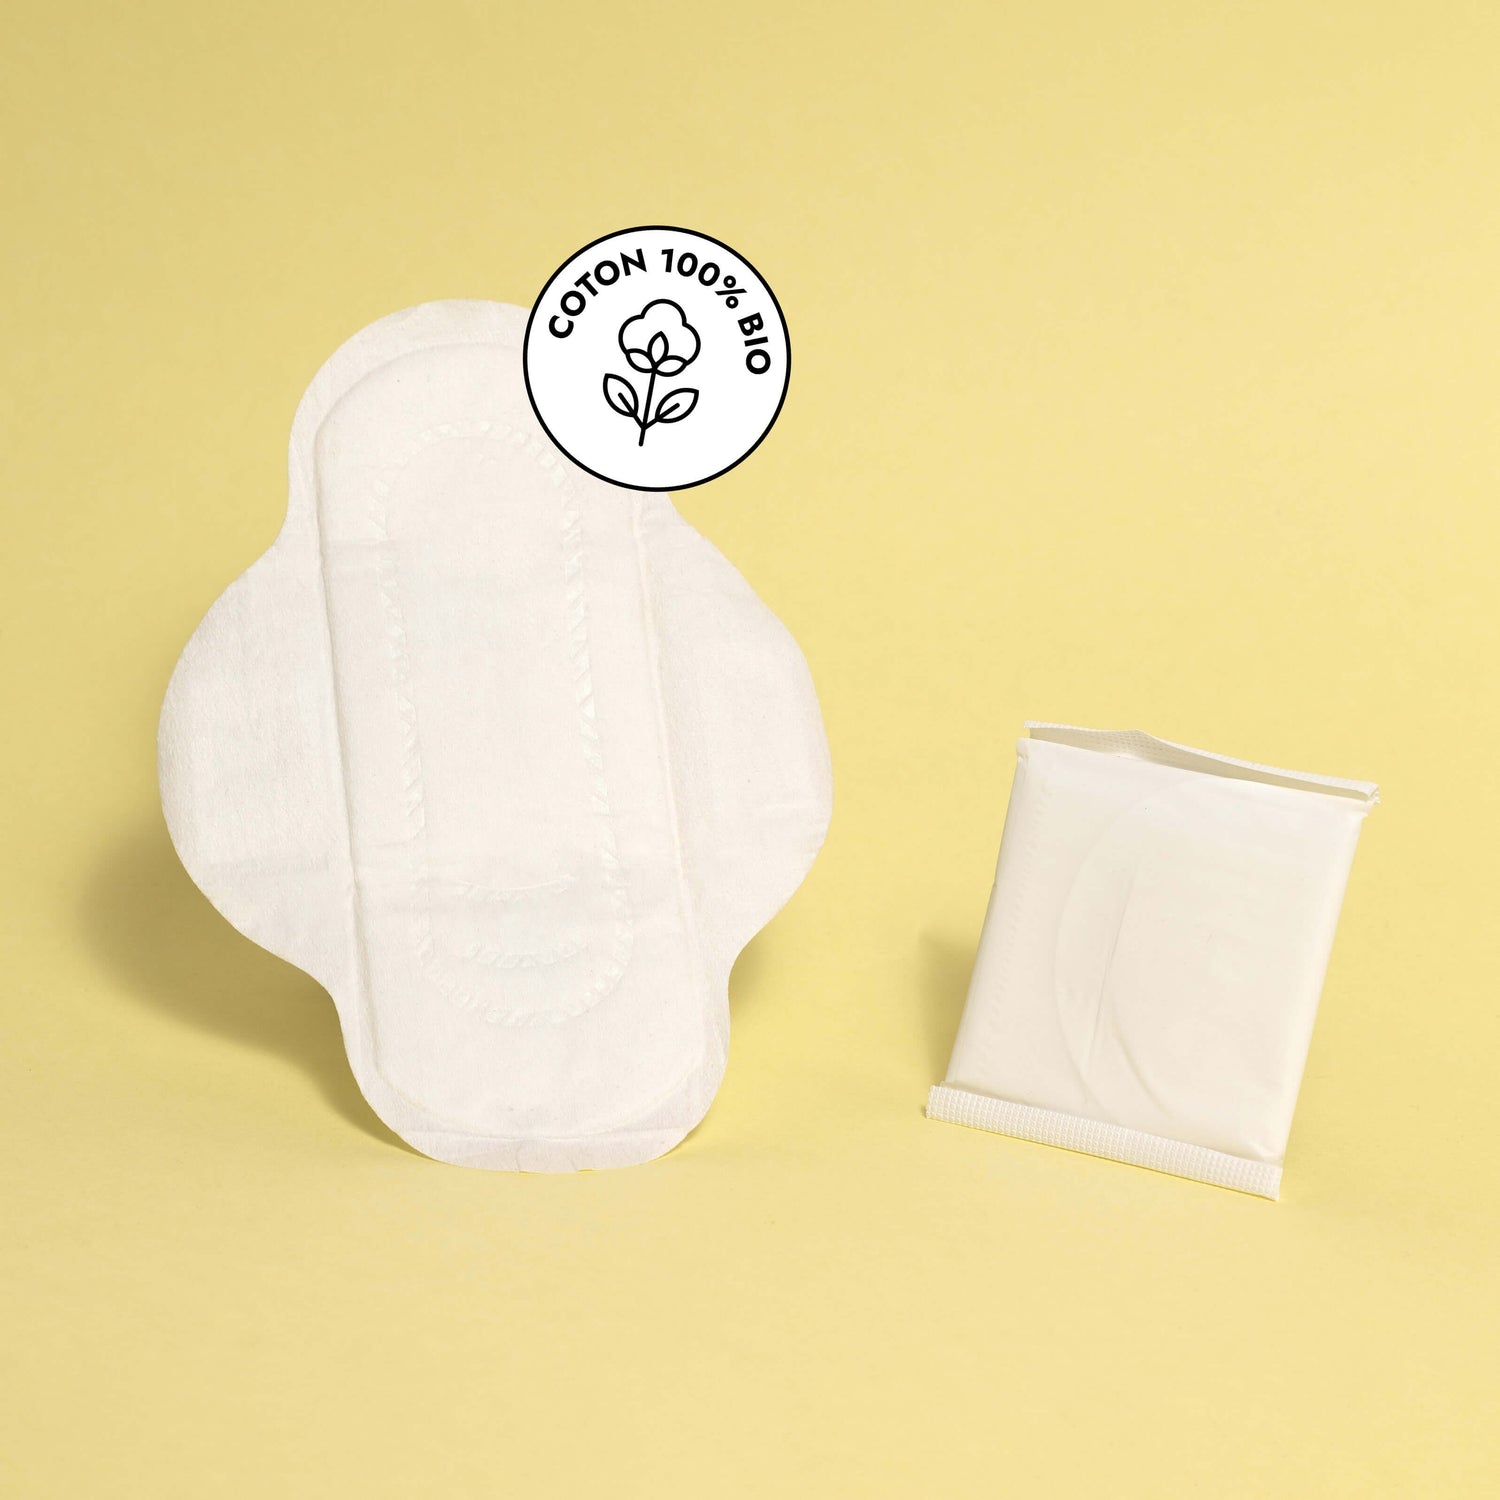 Serviette hygiénique en coton bio ajustée à la morphologie des jeunes filles